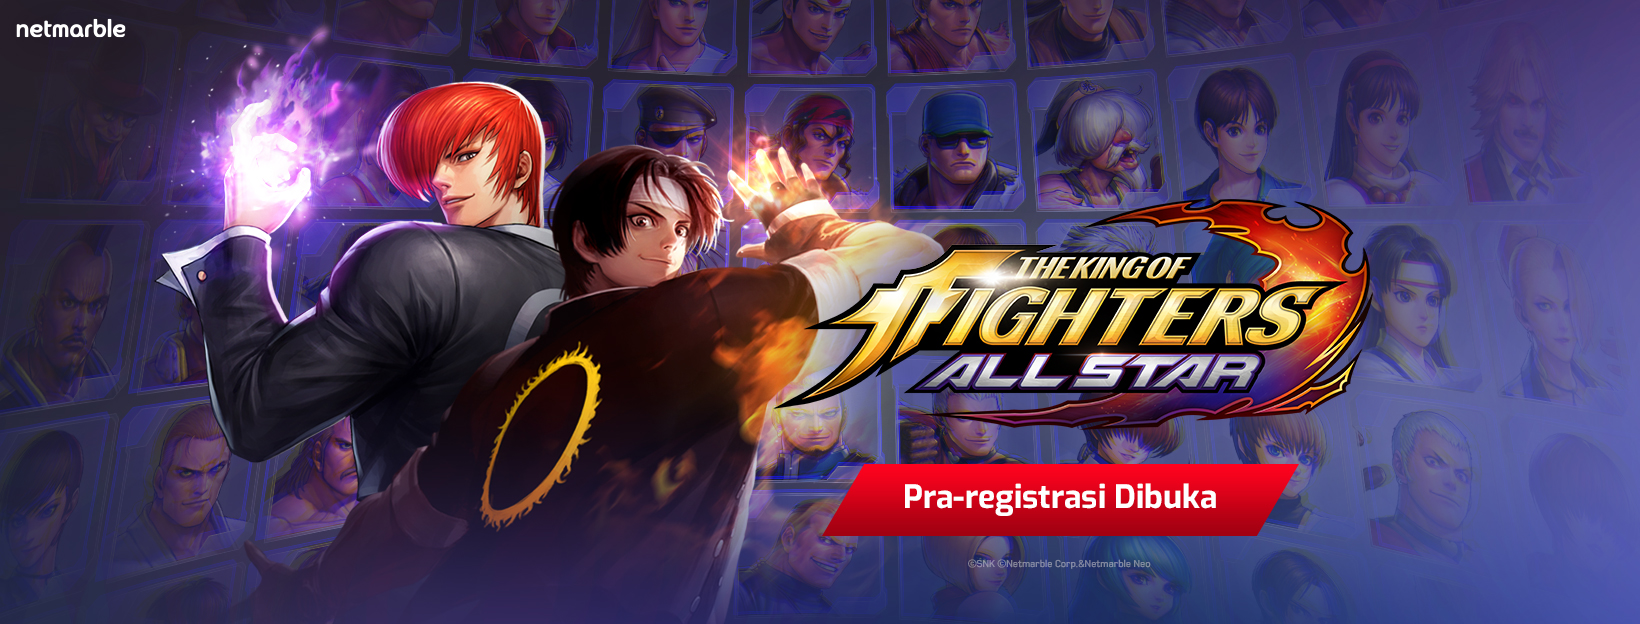 Dapatkan Hadiah Dengan Ikut Pra Registrasi BeatEm Up Action RPG Terbaru Netmarble The King Of Fighters ALLSTAR